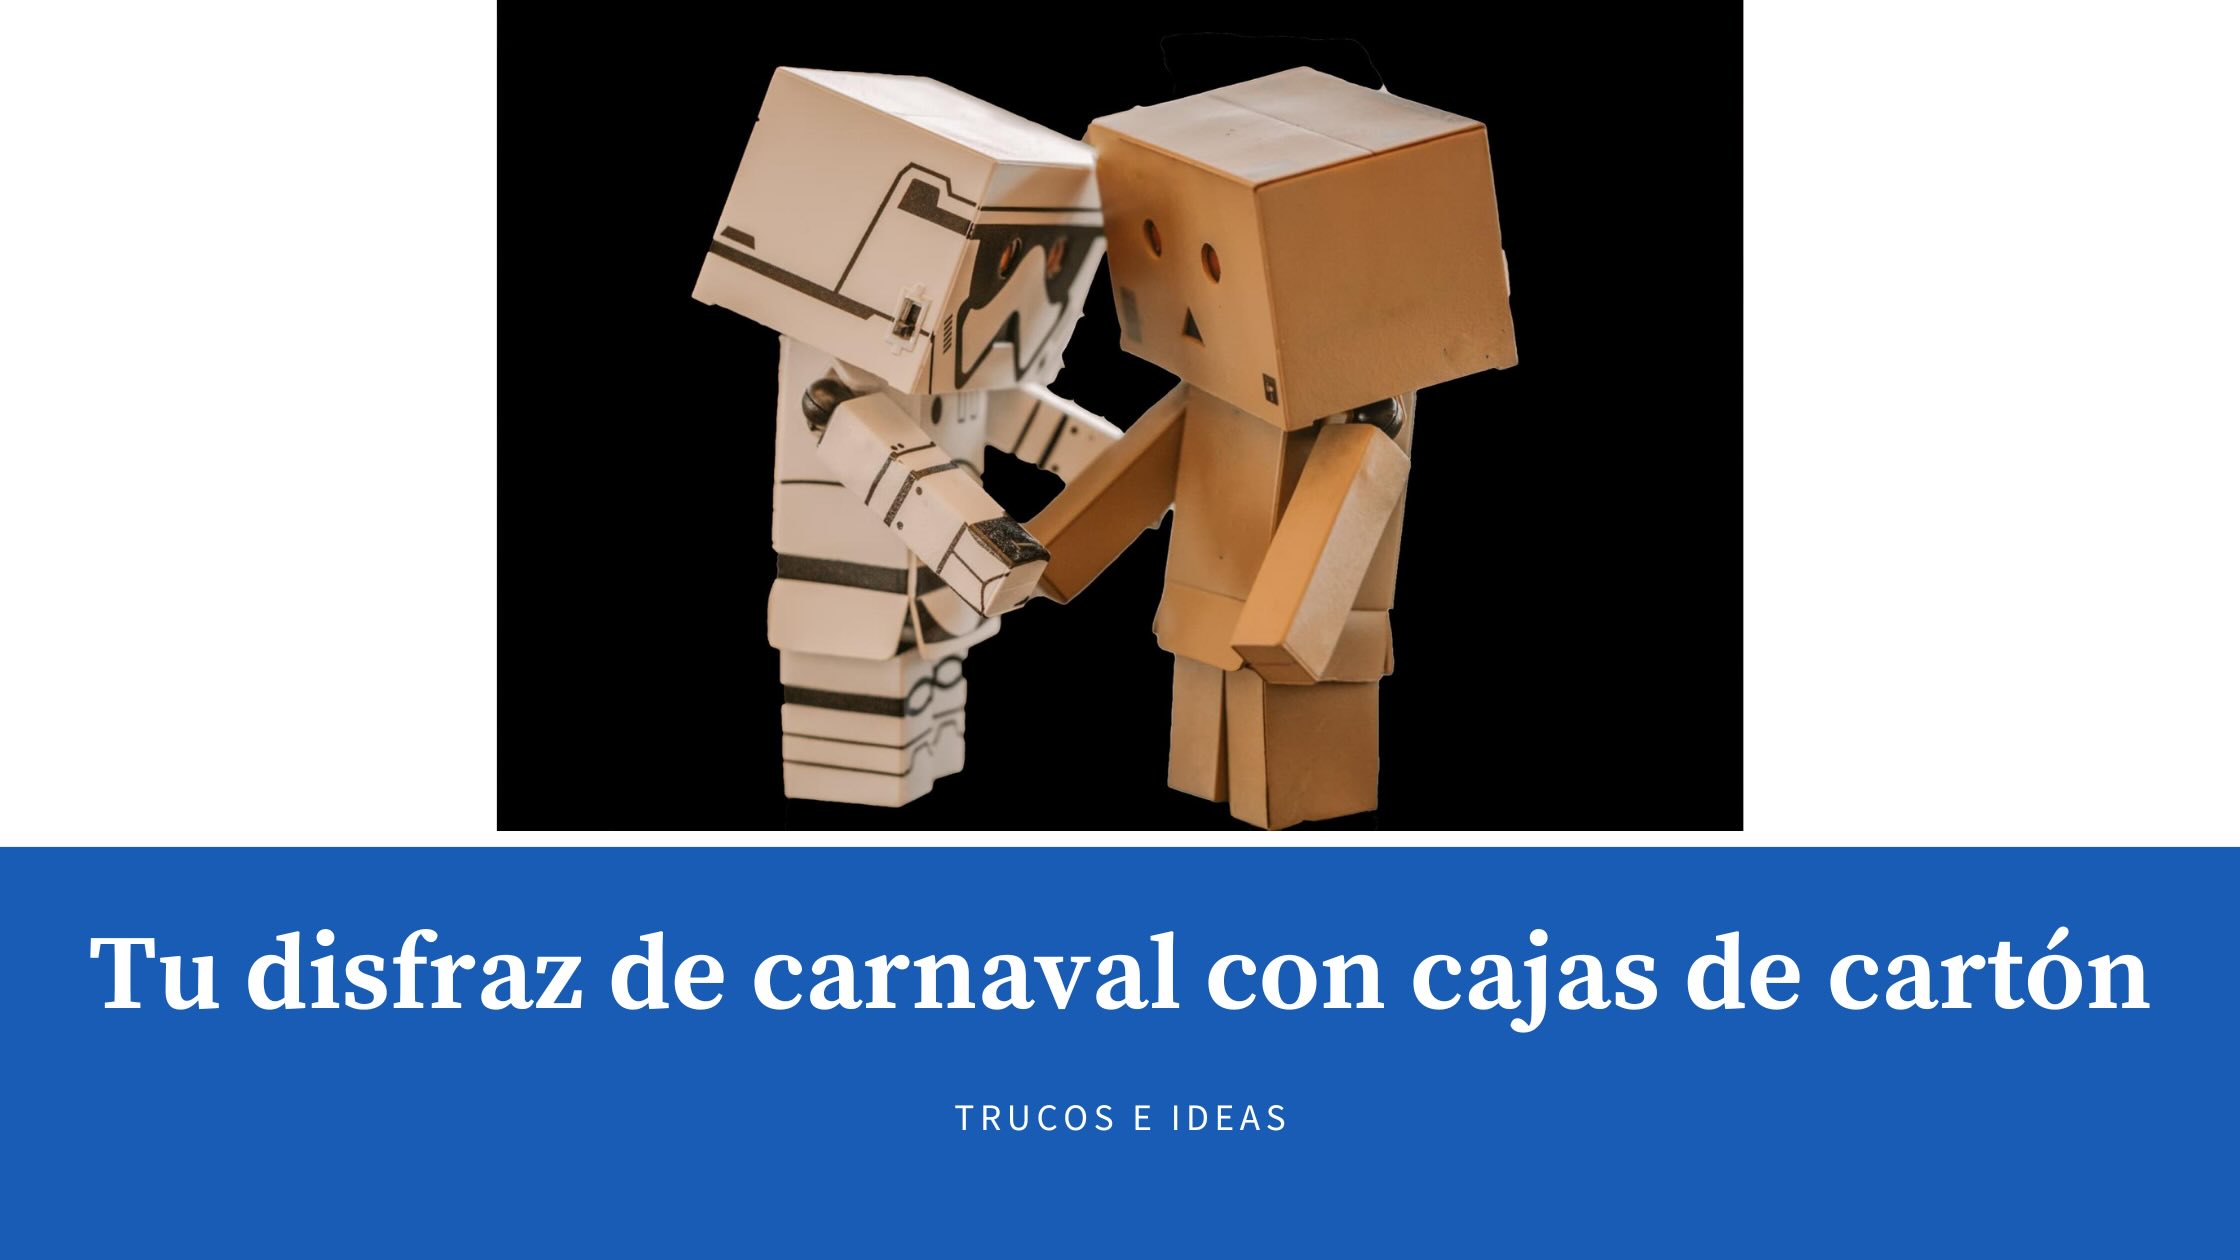 Tu disfraz de carnaval con cajas de cartón